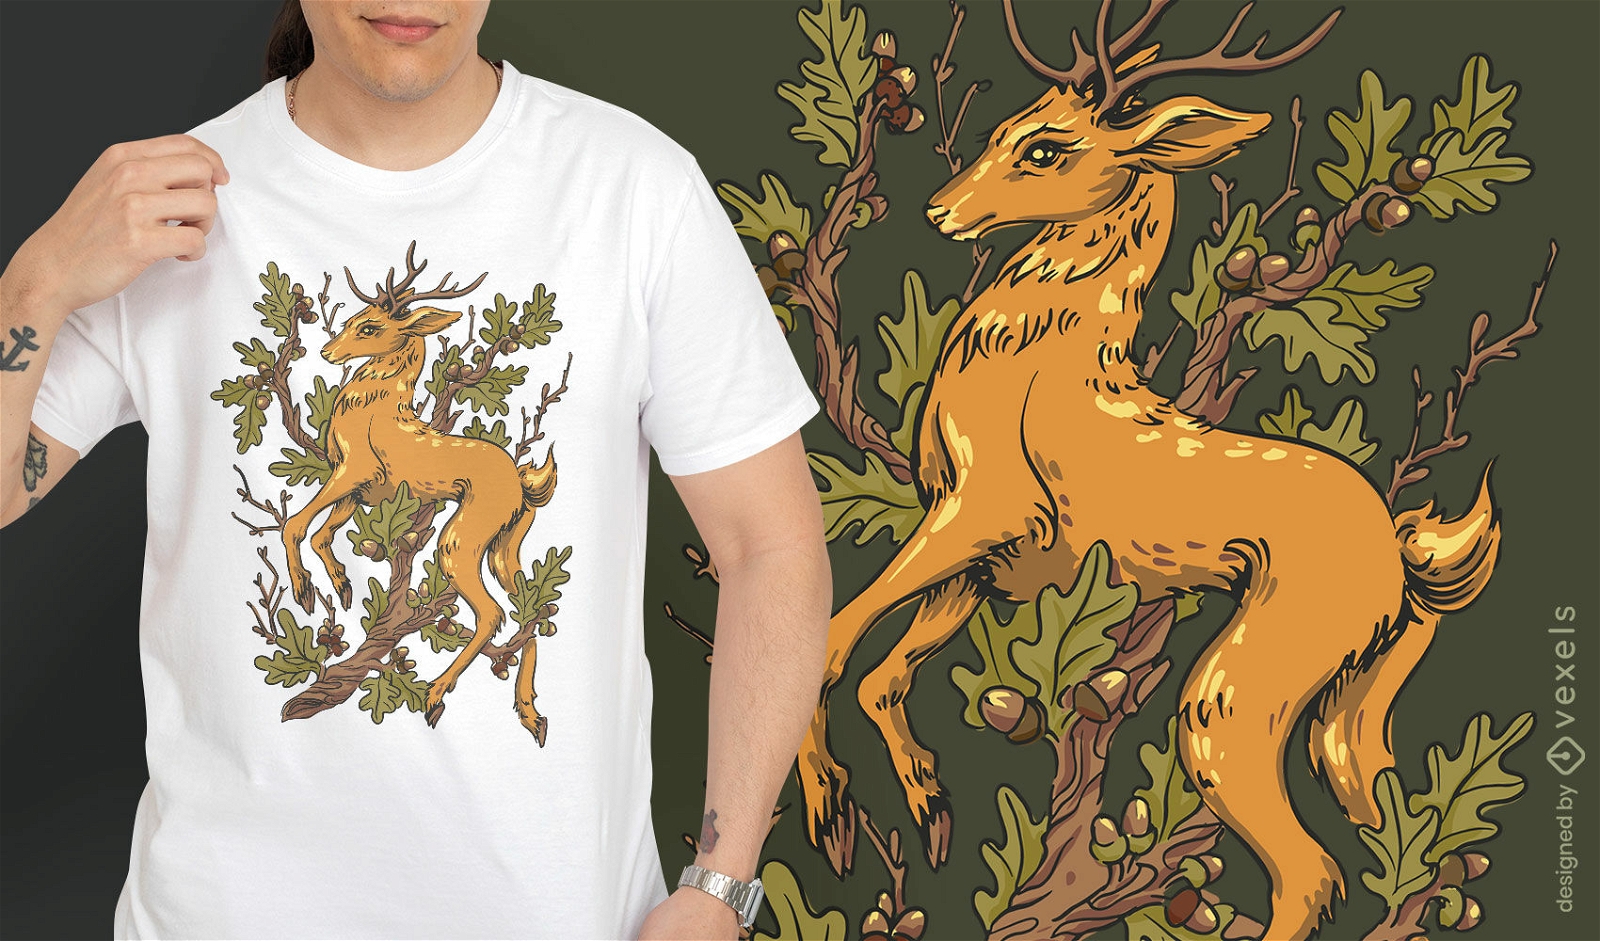 Forest deer illustration t-shirt design